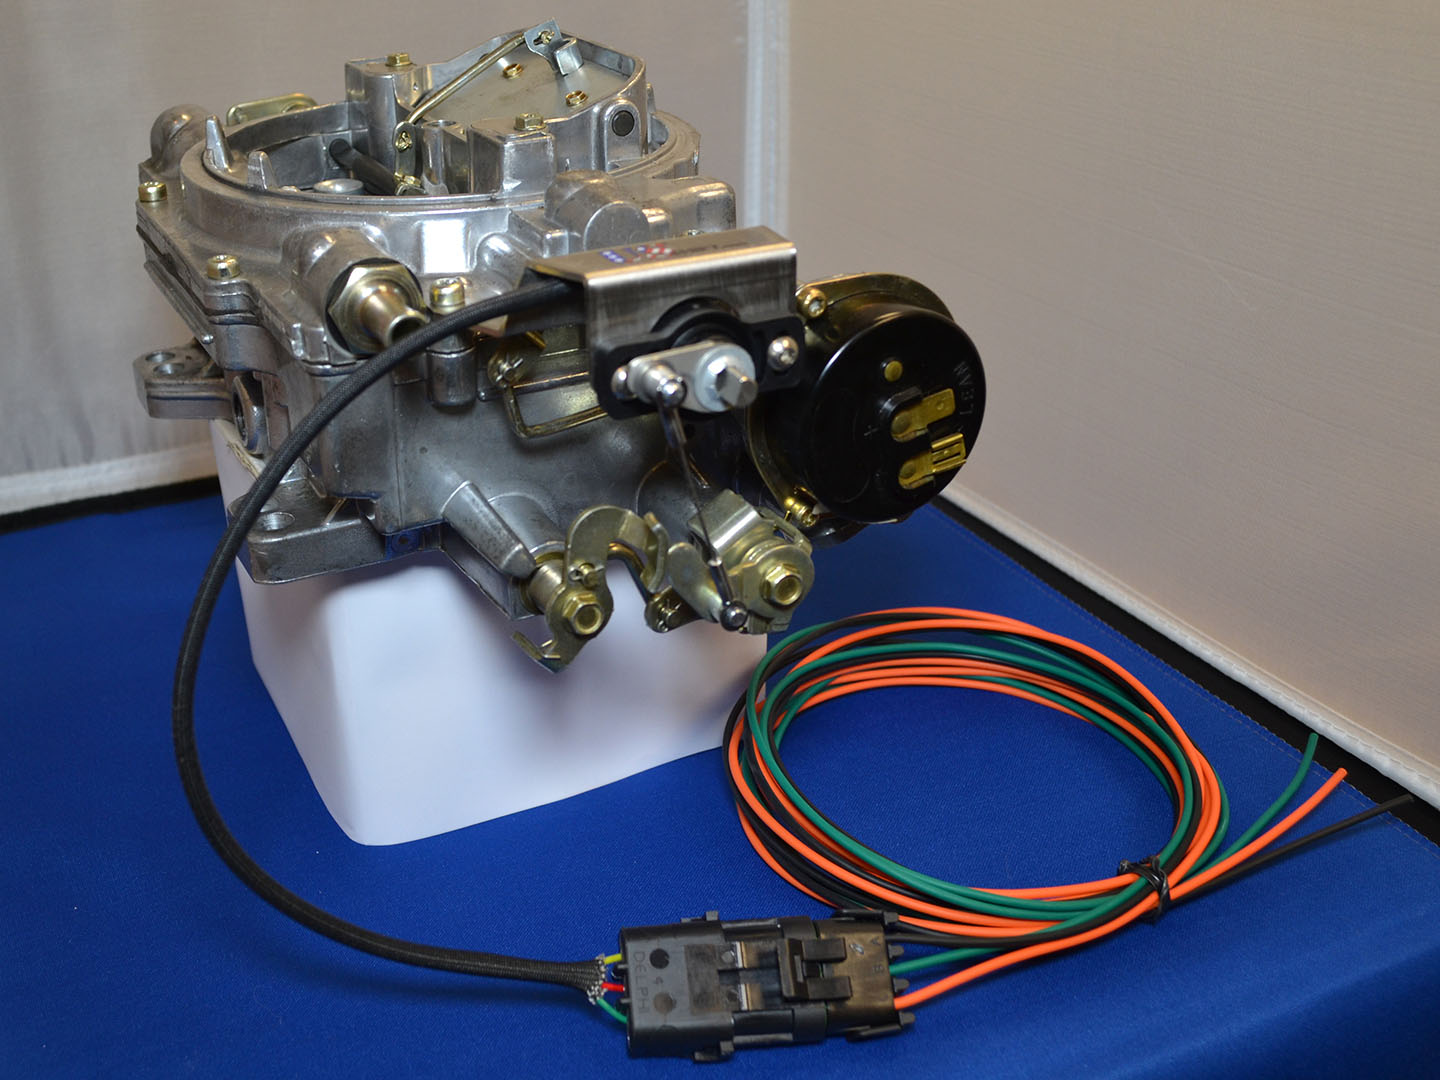 US Shift's TPS Kit installed on Edelbrock carburetor